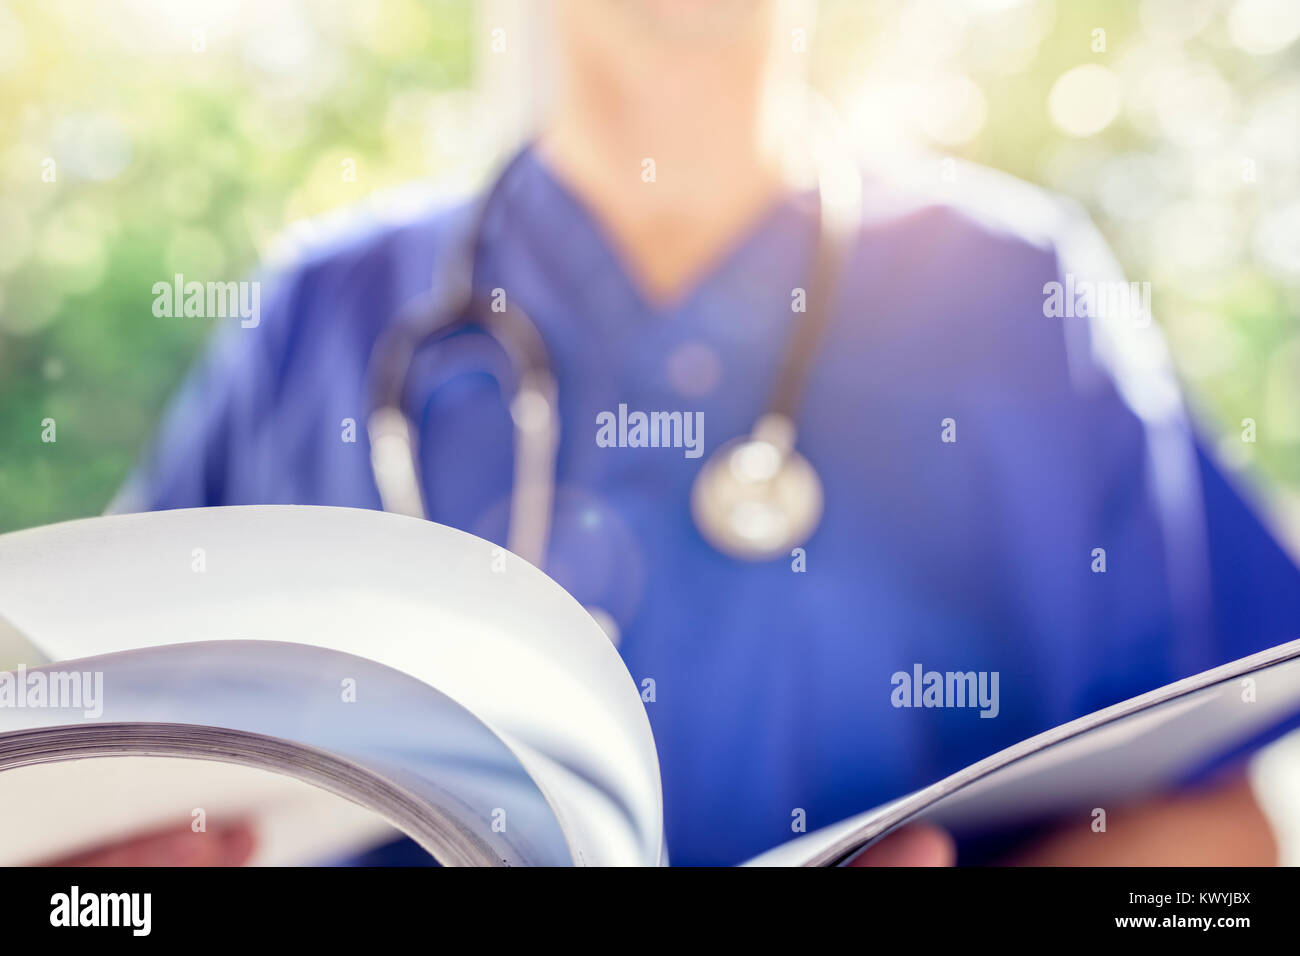 Dottore in scrubs uniforme di leggere le note sul paziente o diagramma di medico Foto Stock